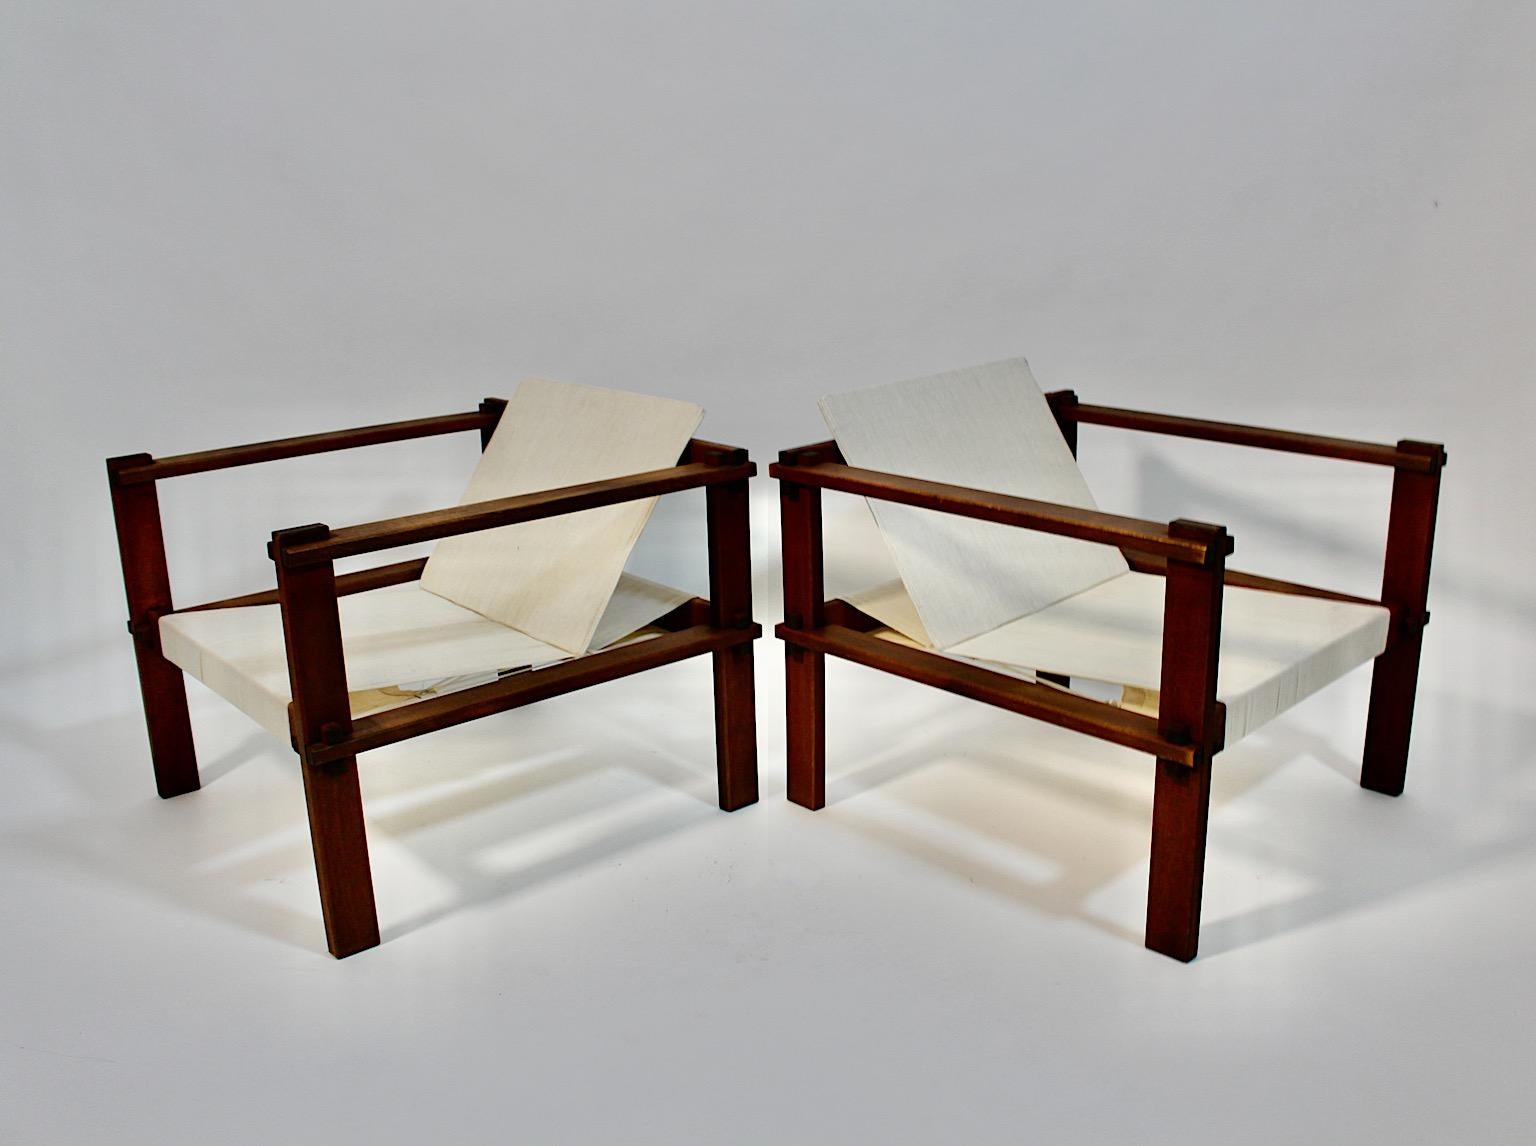 Chaises longues ou fauteuils vintage en hêtre avec toile crème claire attribuée à Bauhaus de forme géométrique circa 1920 Allemagne.
Une étonnante paire de chaises longues ou de fauteuils autoportants en hêtre, tandis que l'assise et le dossier